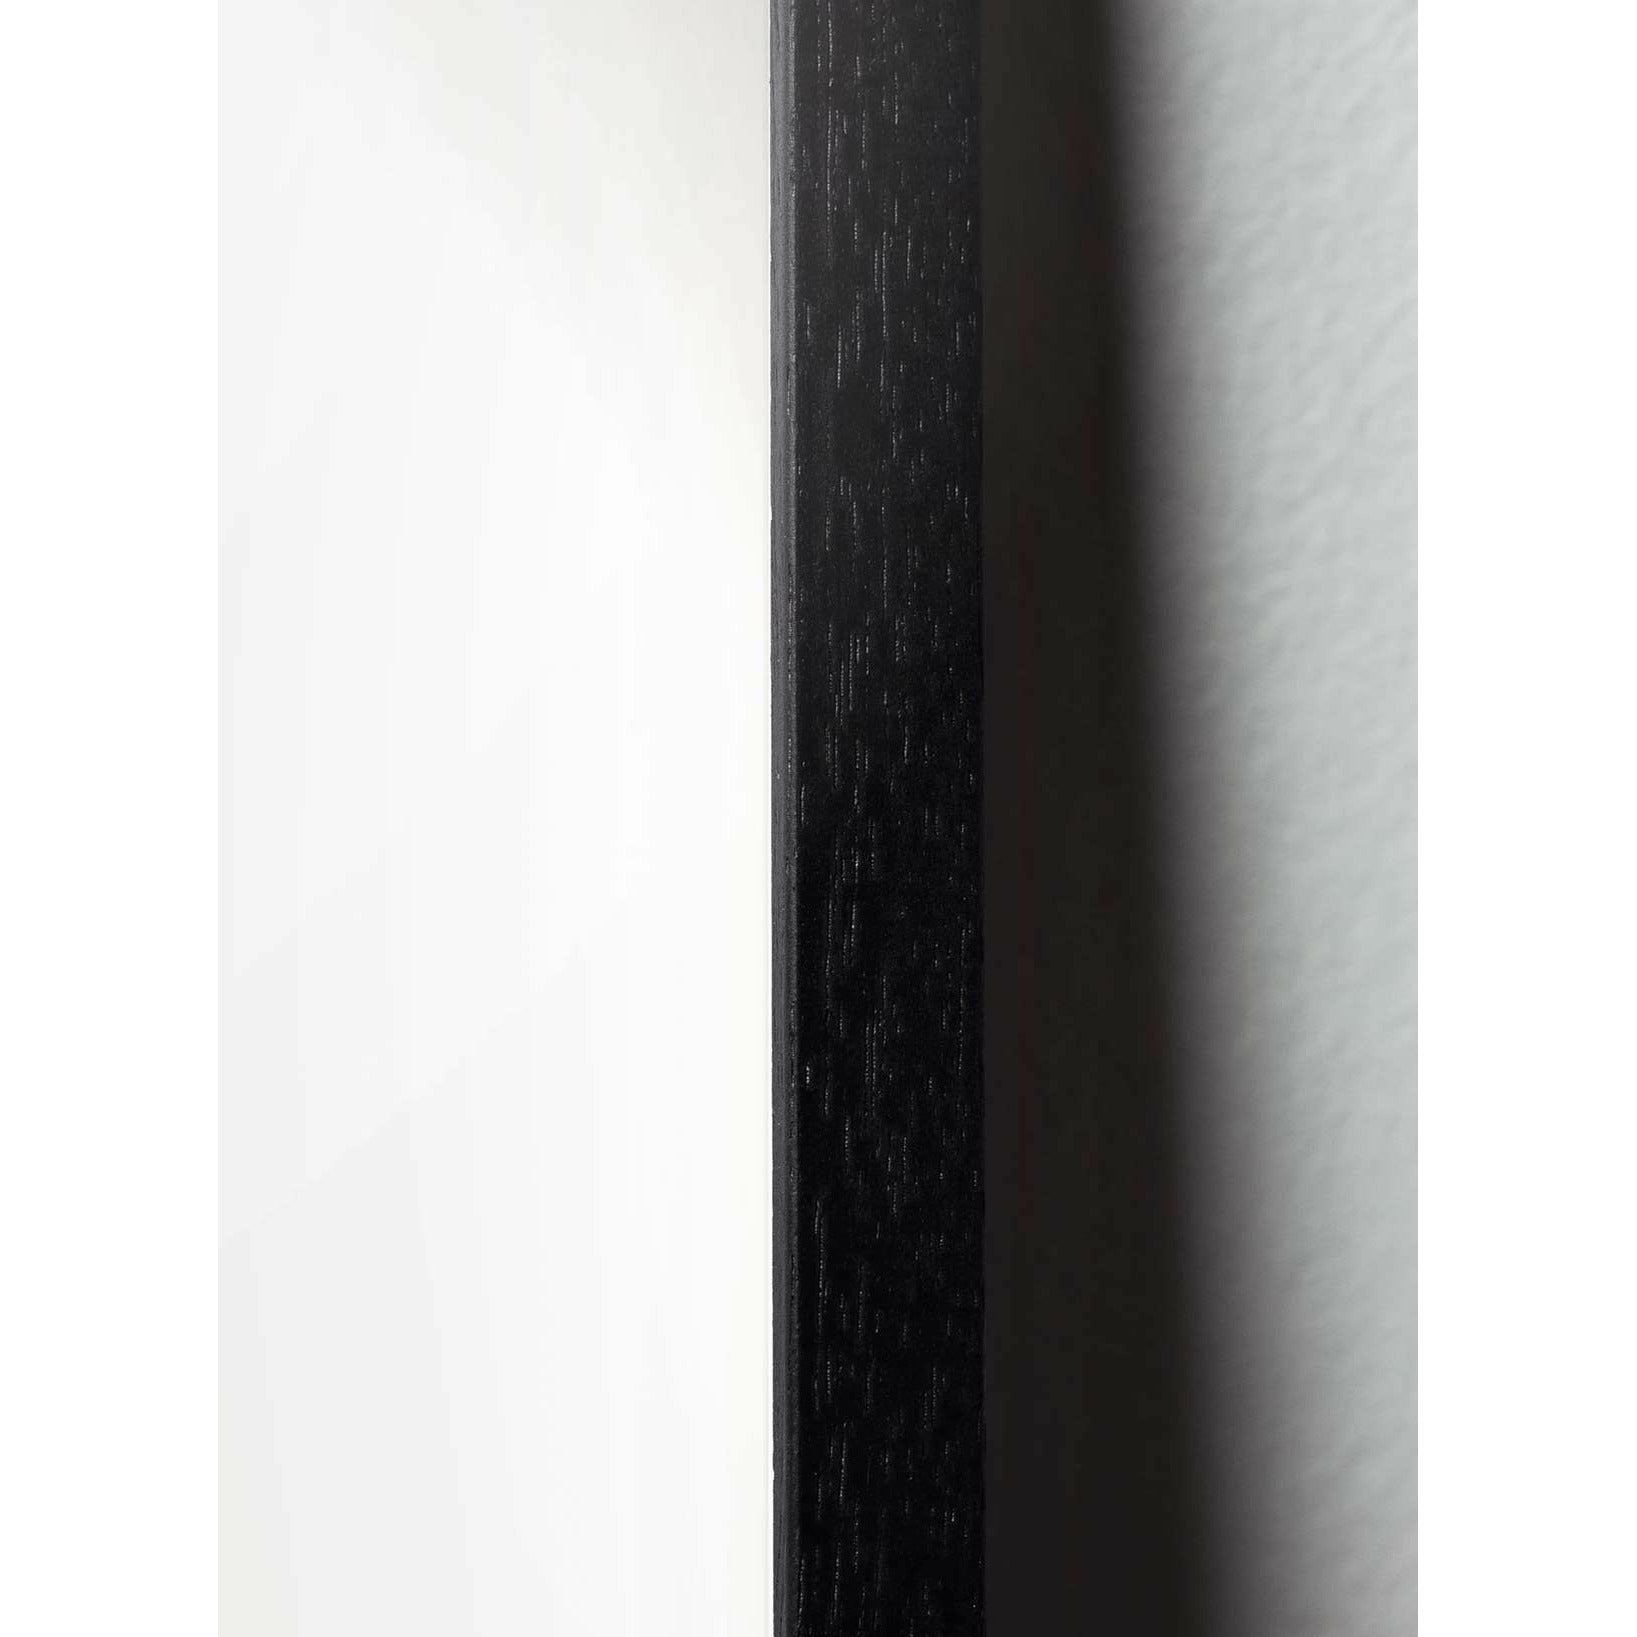 Plakát ikon designu mozků, rám vyrobený z černého lakovaného dřeva 50 x70 cm, šedá